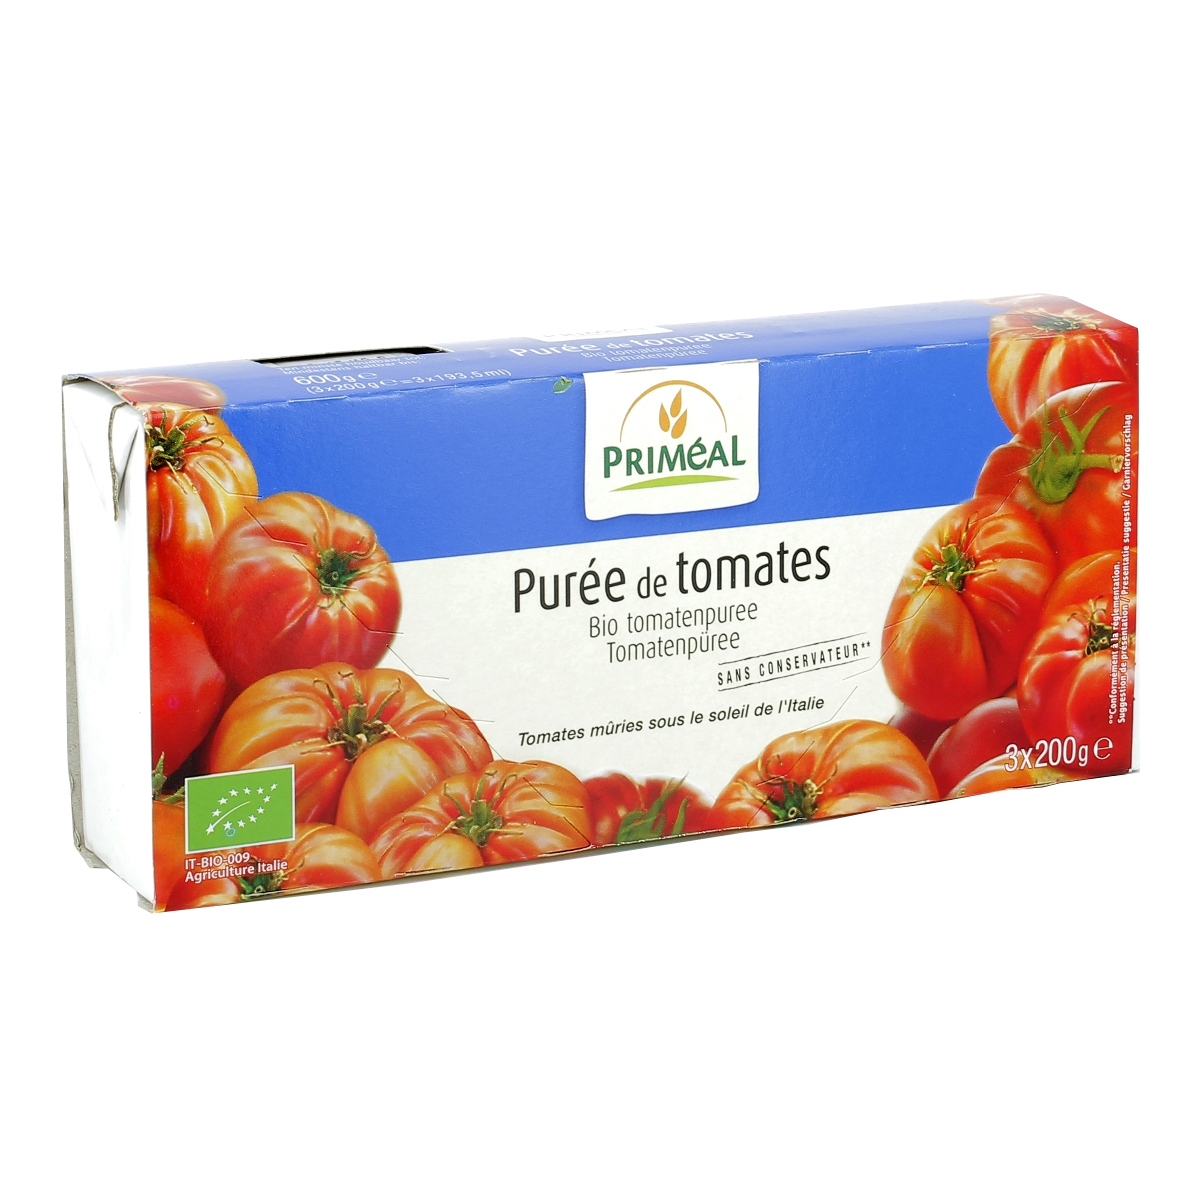 Achat Paul & Louise · Taboulé · Tomates fraîches et huile d'olive • Migros